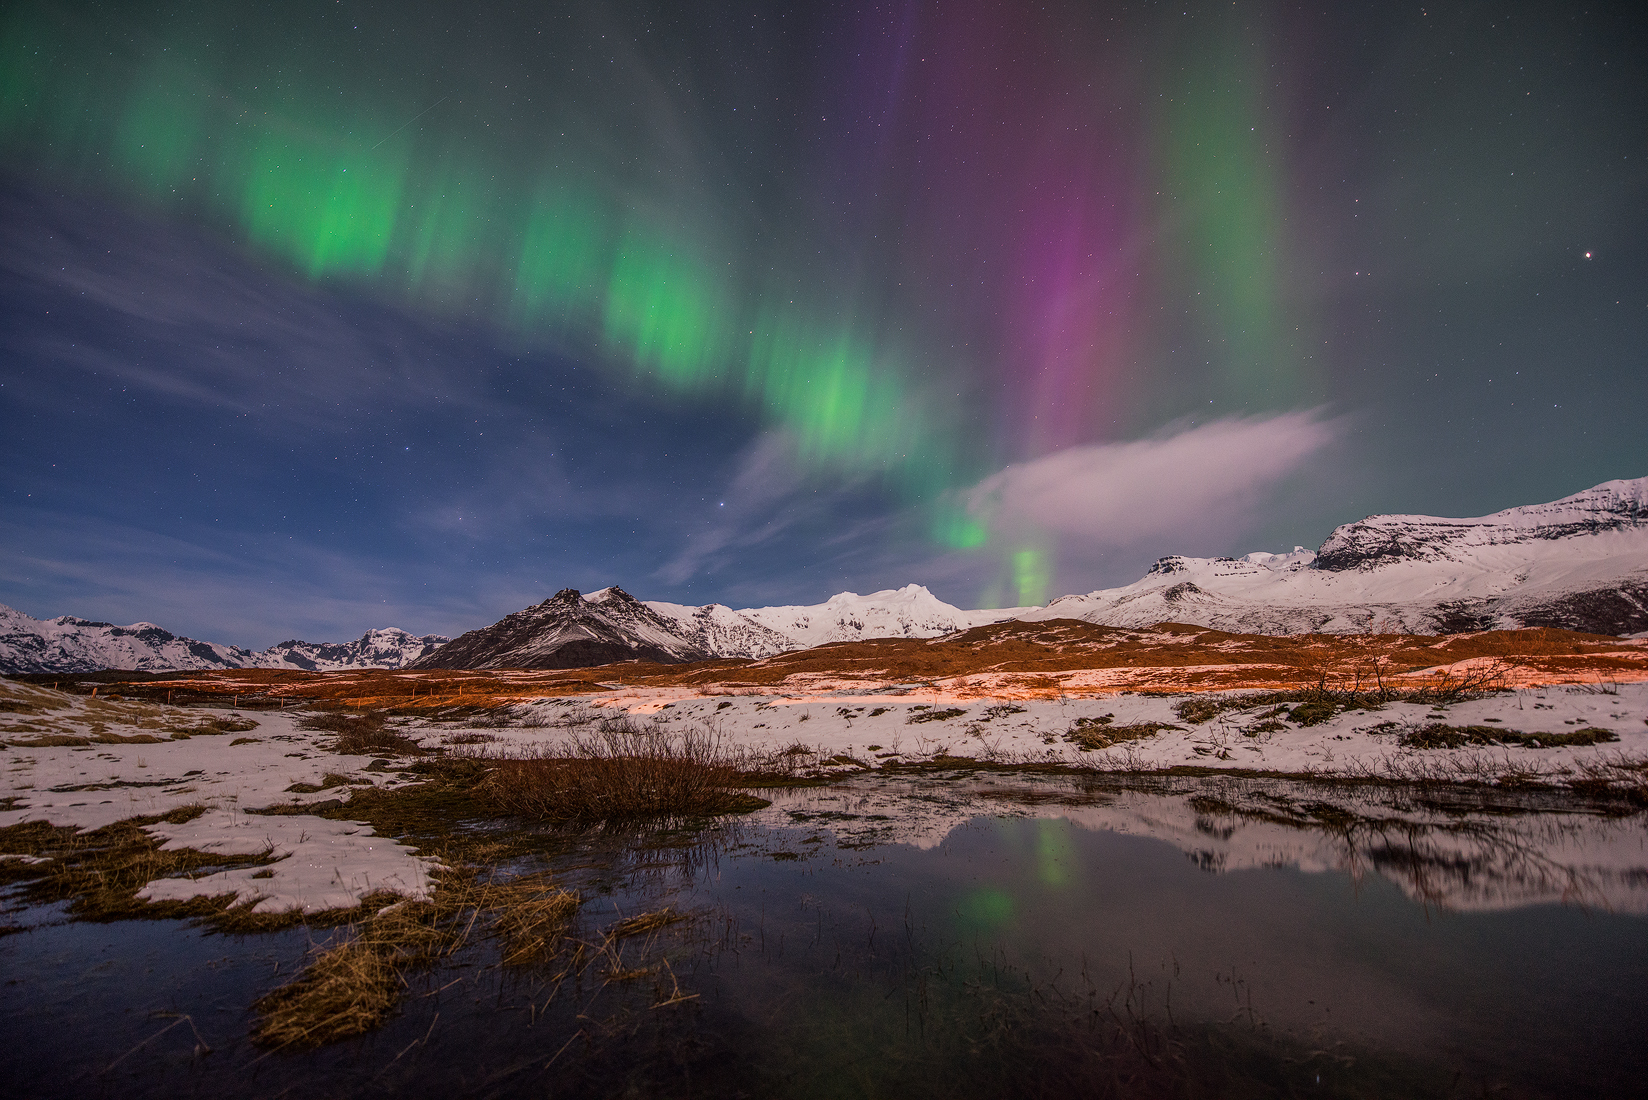 Islands verschneite Landschaften im Winter schaffen ein eisiges Wunderland, über dem man die Aurora Borealis bewundern kann.